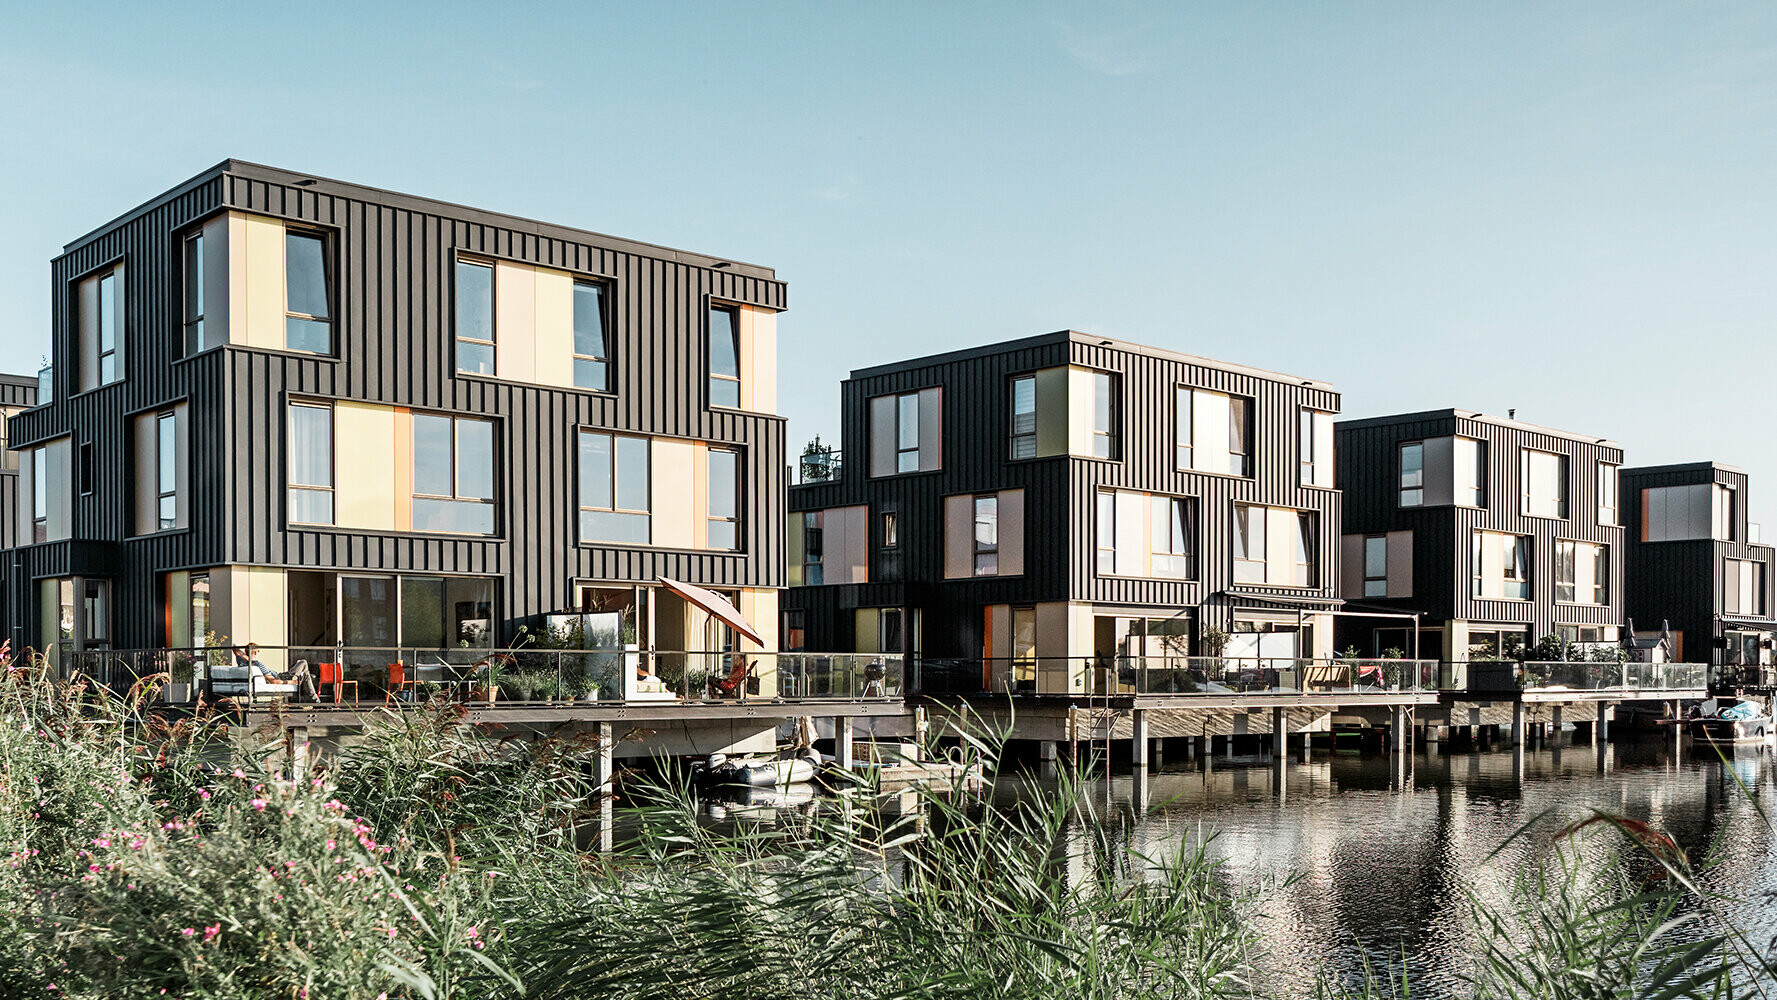 bostadsområde i Amsterdam med bostadshus med antracitfärgad PREFALZ-fasad